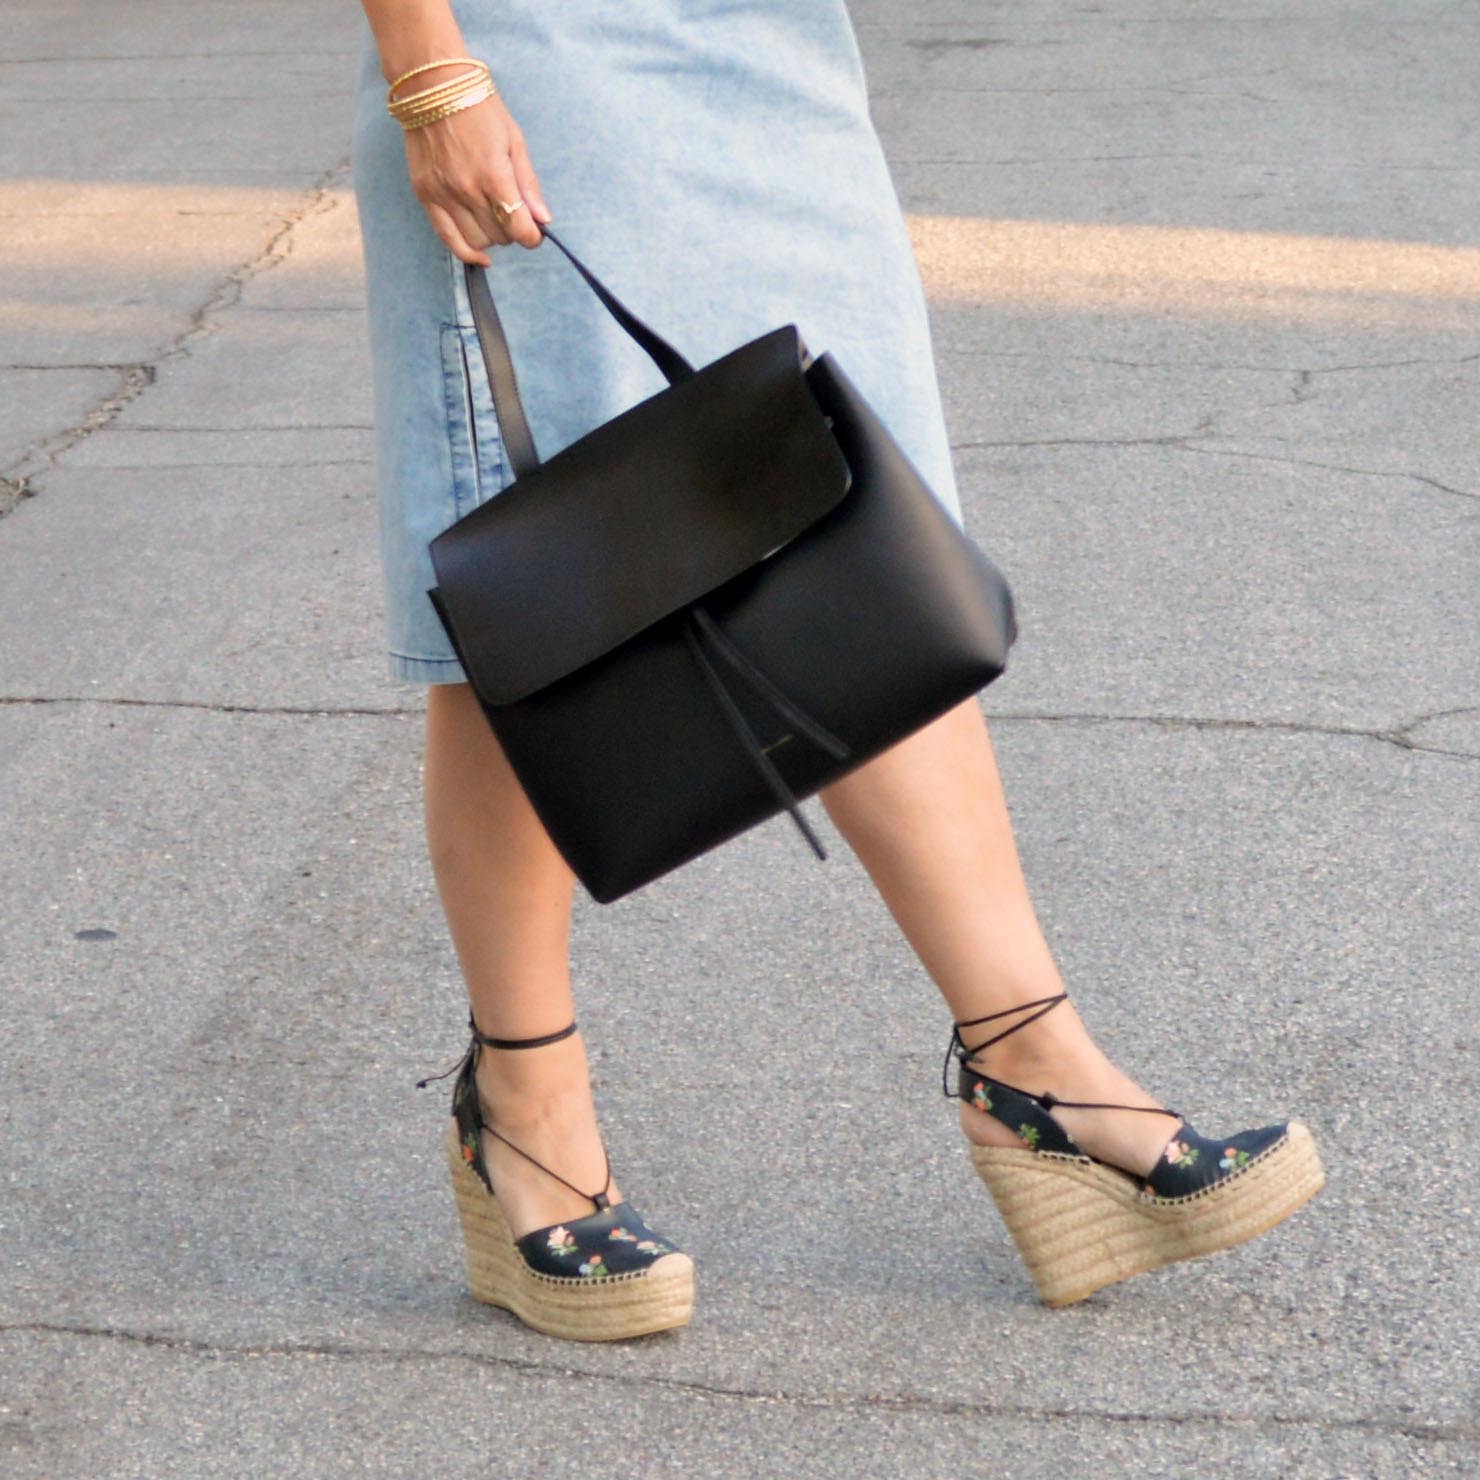 mansur gavriel lady bag in black – Bay Area Fashionista